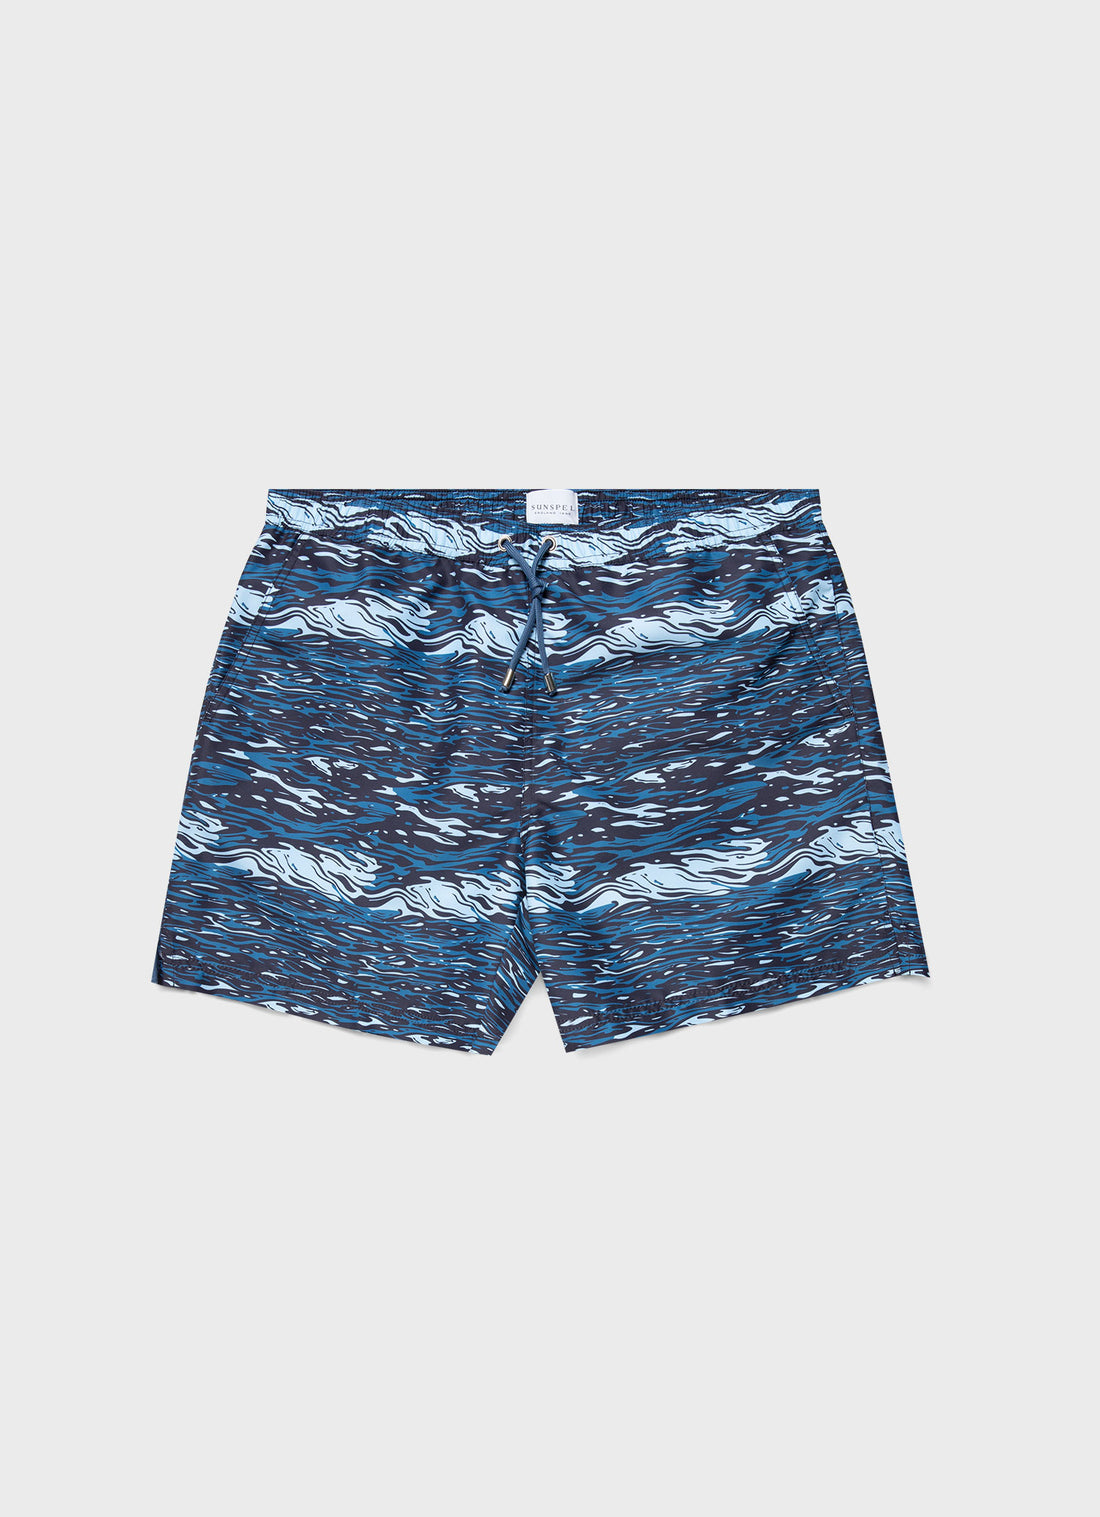 Men's Swimshort in Bluestone Ocean Water Print